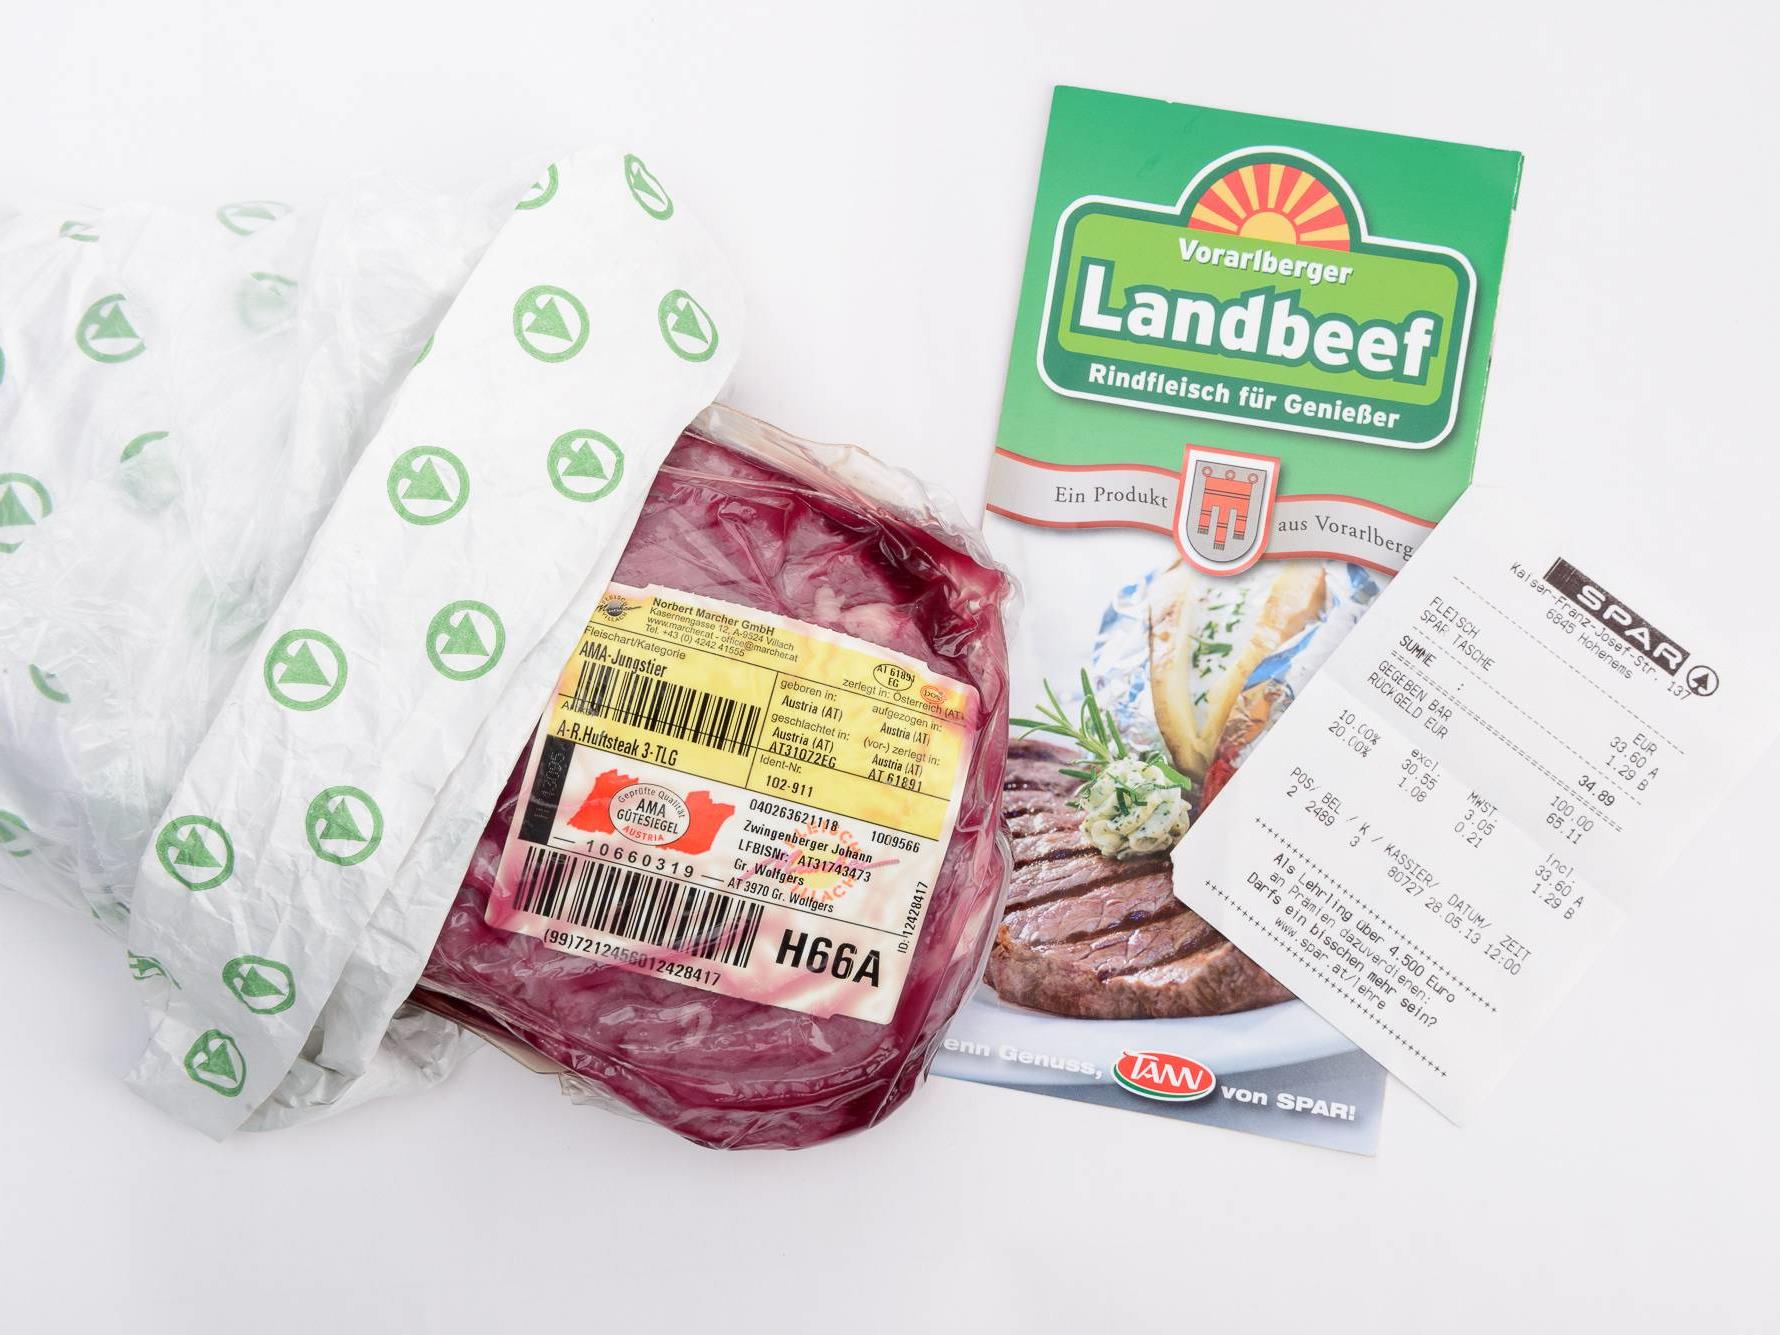 Das "Fleisch des Anstoßes": Von Sutterlüty in Hohenems gekauftes Rindfleisch.